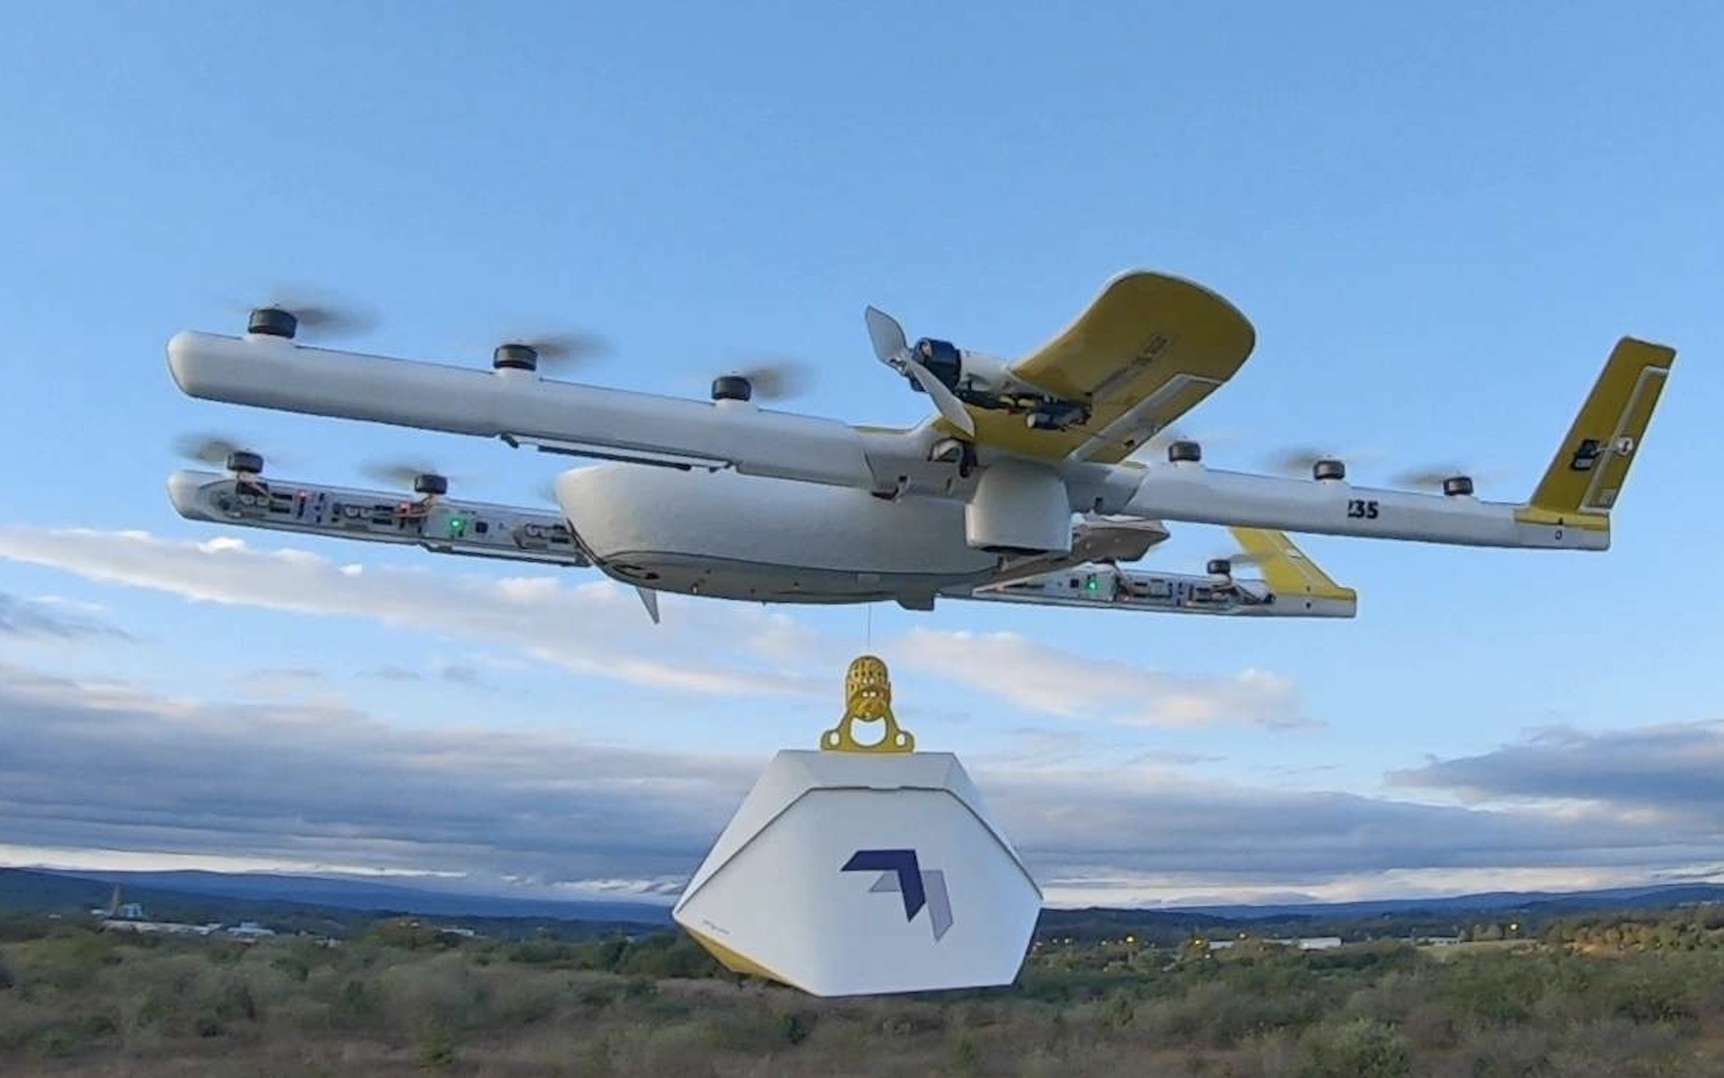 Vers des livraisons par drone encore plus rapides aux États-Unis grâce à ce système